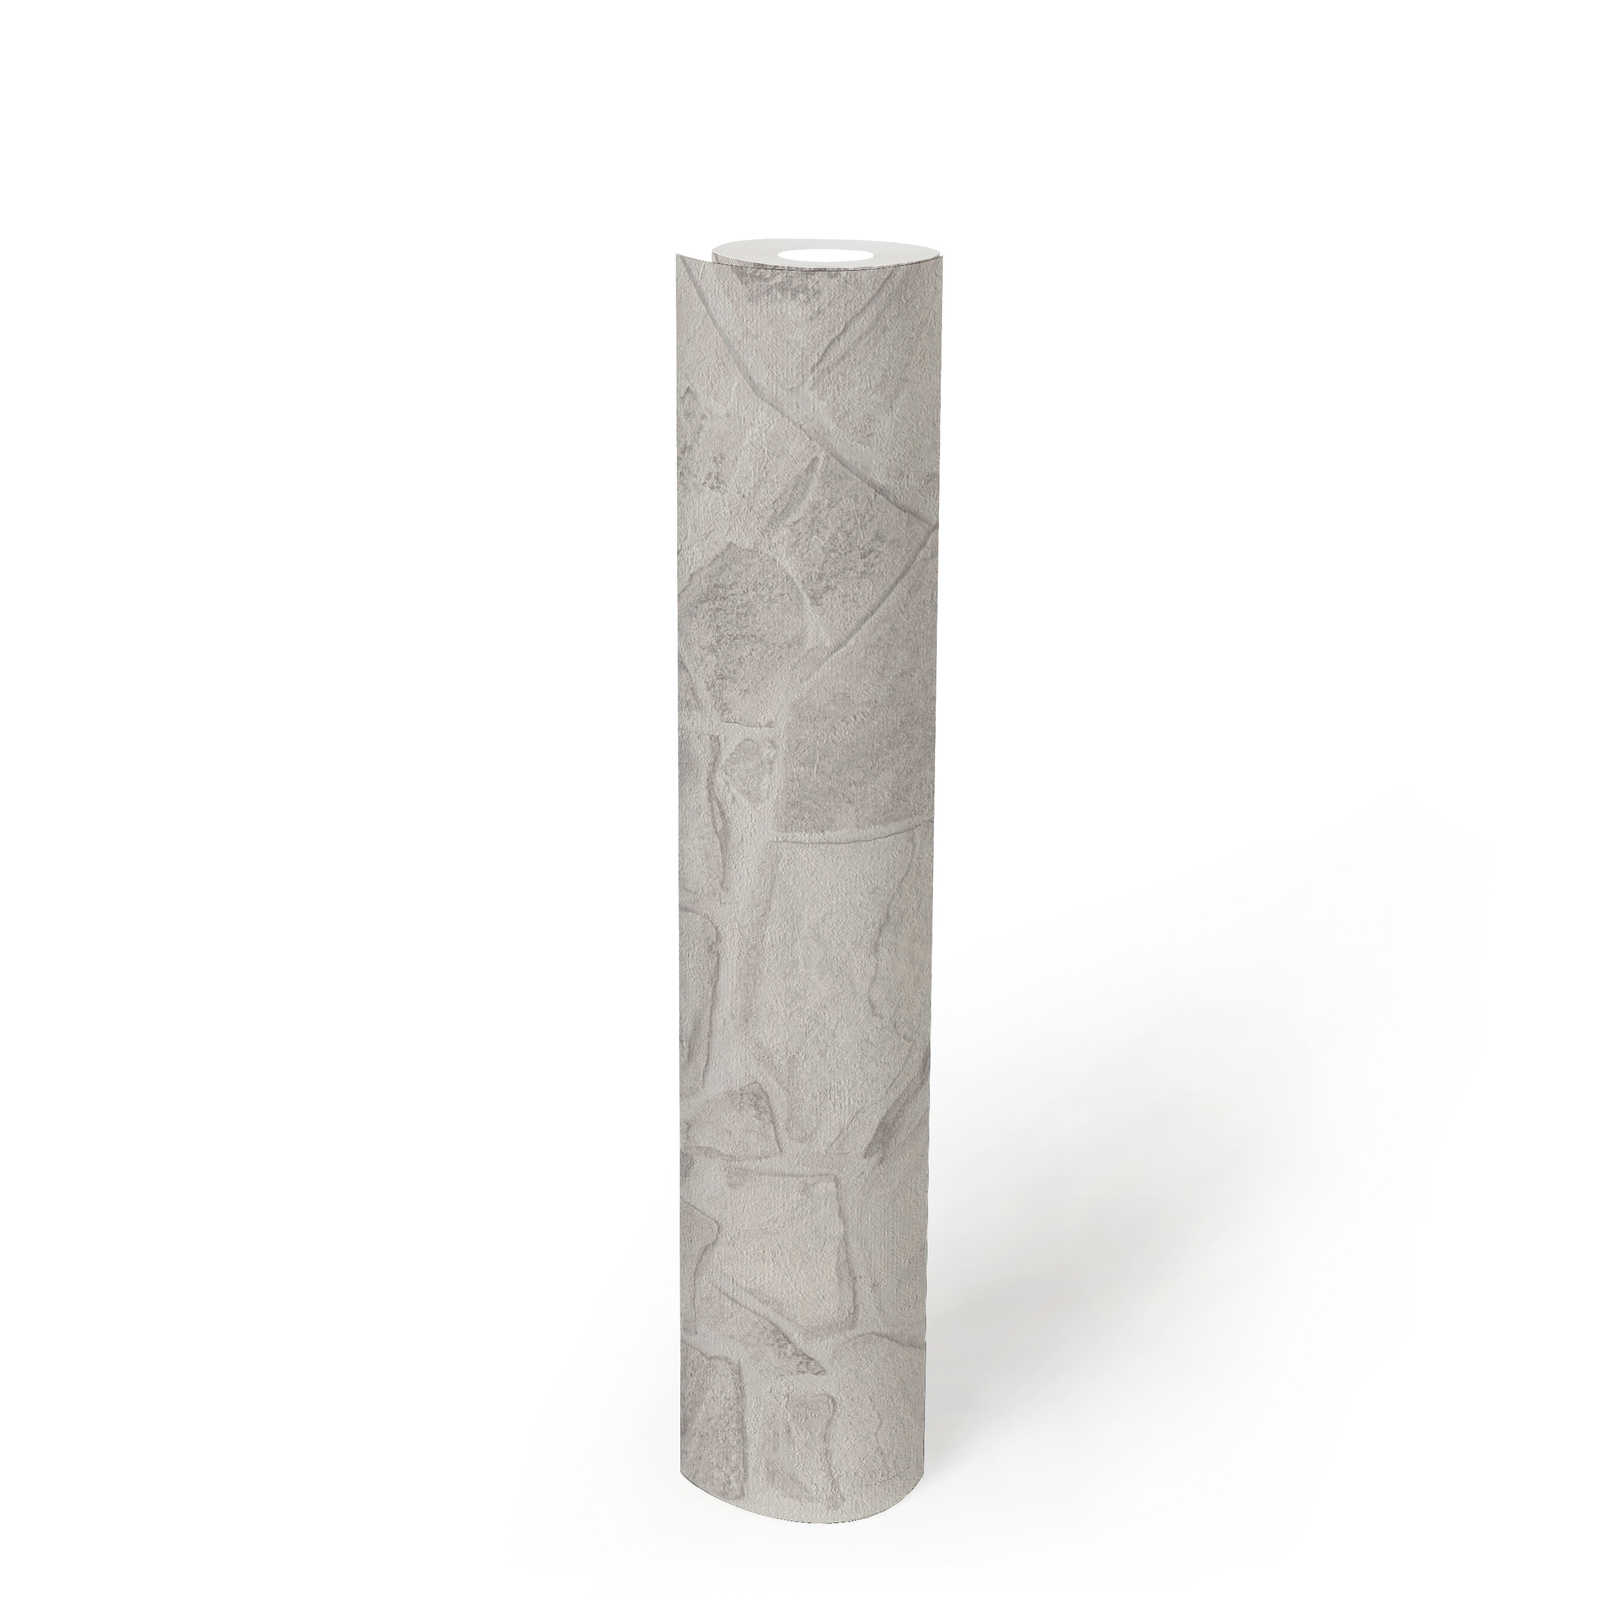             Papel pintado no tejido con aspecto de piedra con efecto de ladrillo en 3D - gris, blanco, gris
        